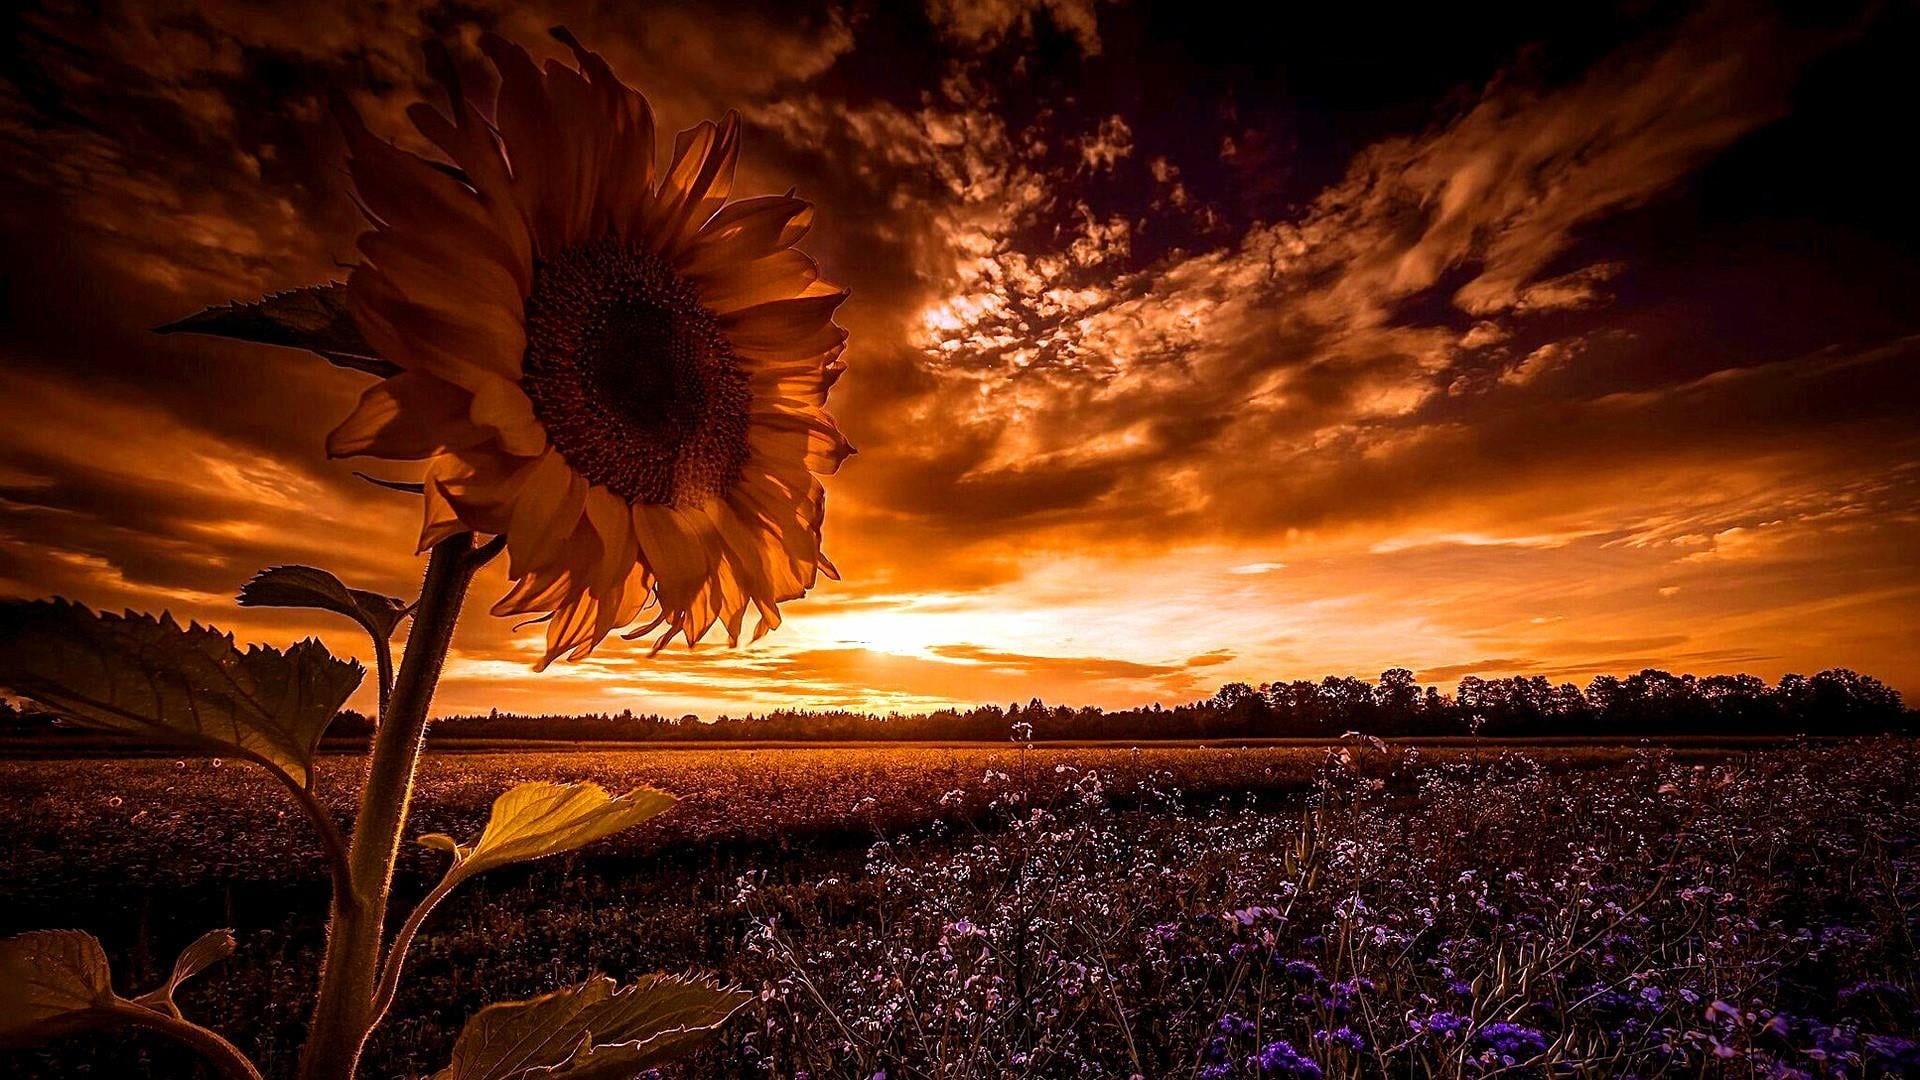 sunflower #sunset #field #landscape #summer flower field #dusk P # wallpaper #hdwallpaper #desktop. Sunflower sunset, Sunset, Summer landscape